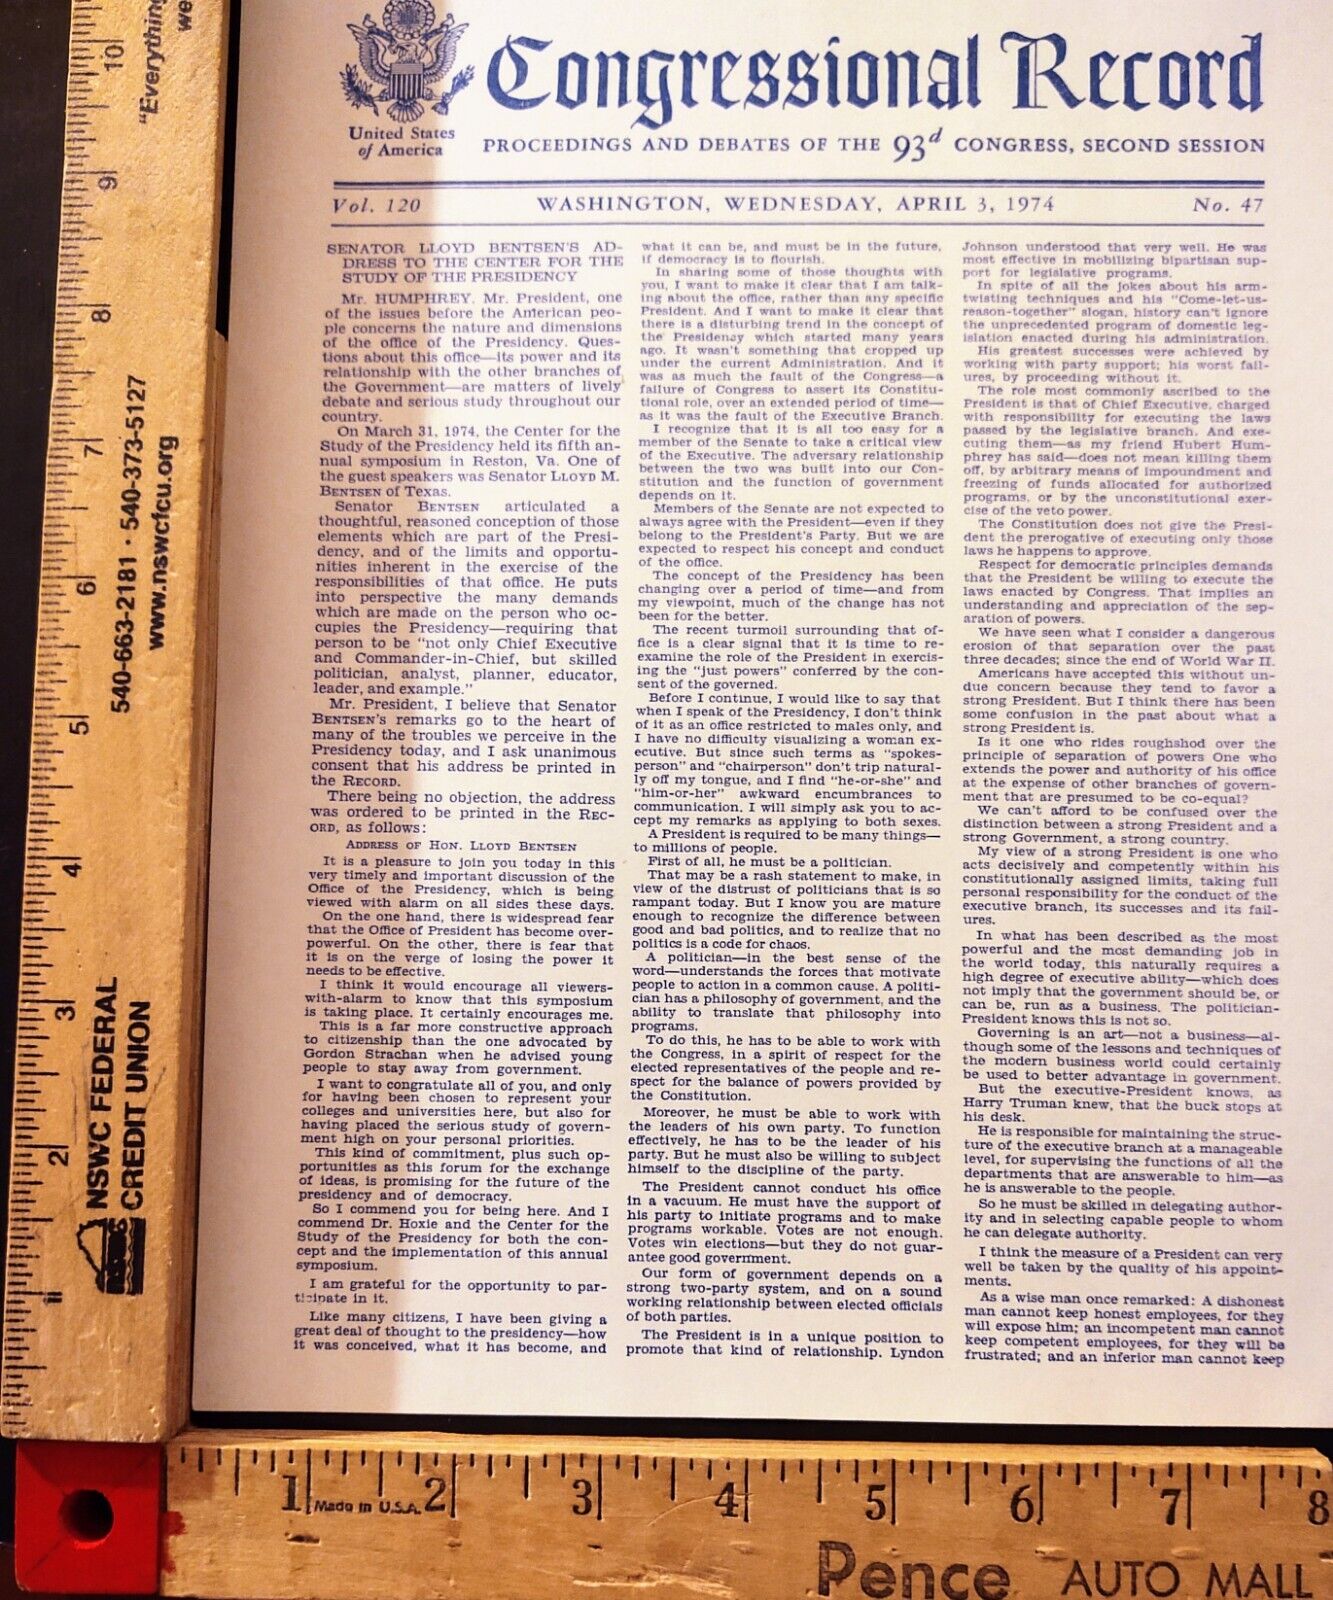 Vintage Congressional Record Apr 3, 1974 Proceedings Debates 93rd Congress Flyer